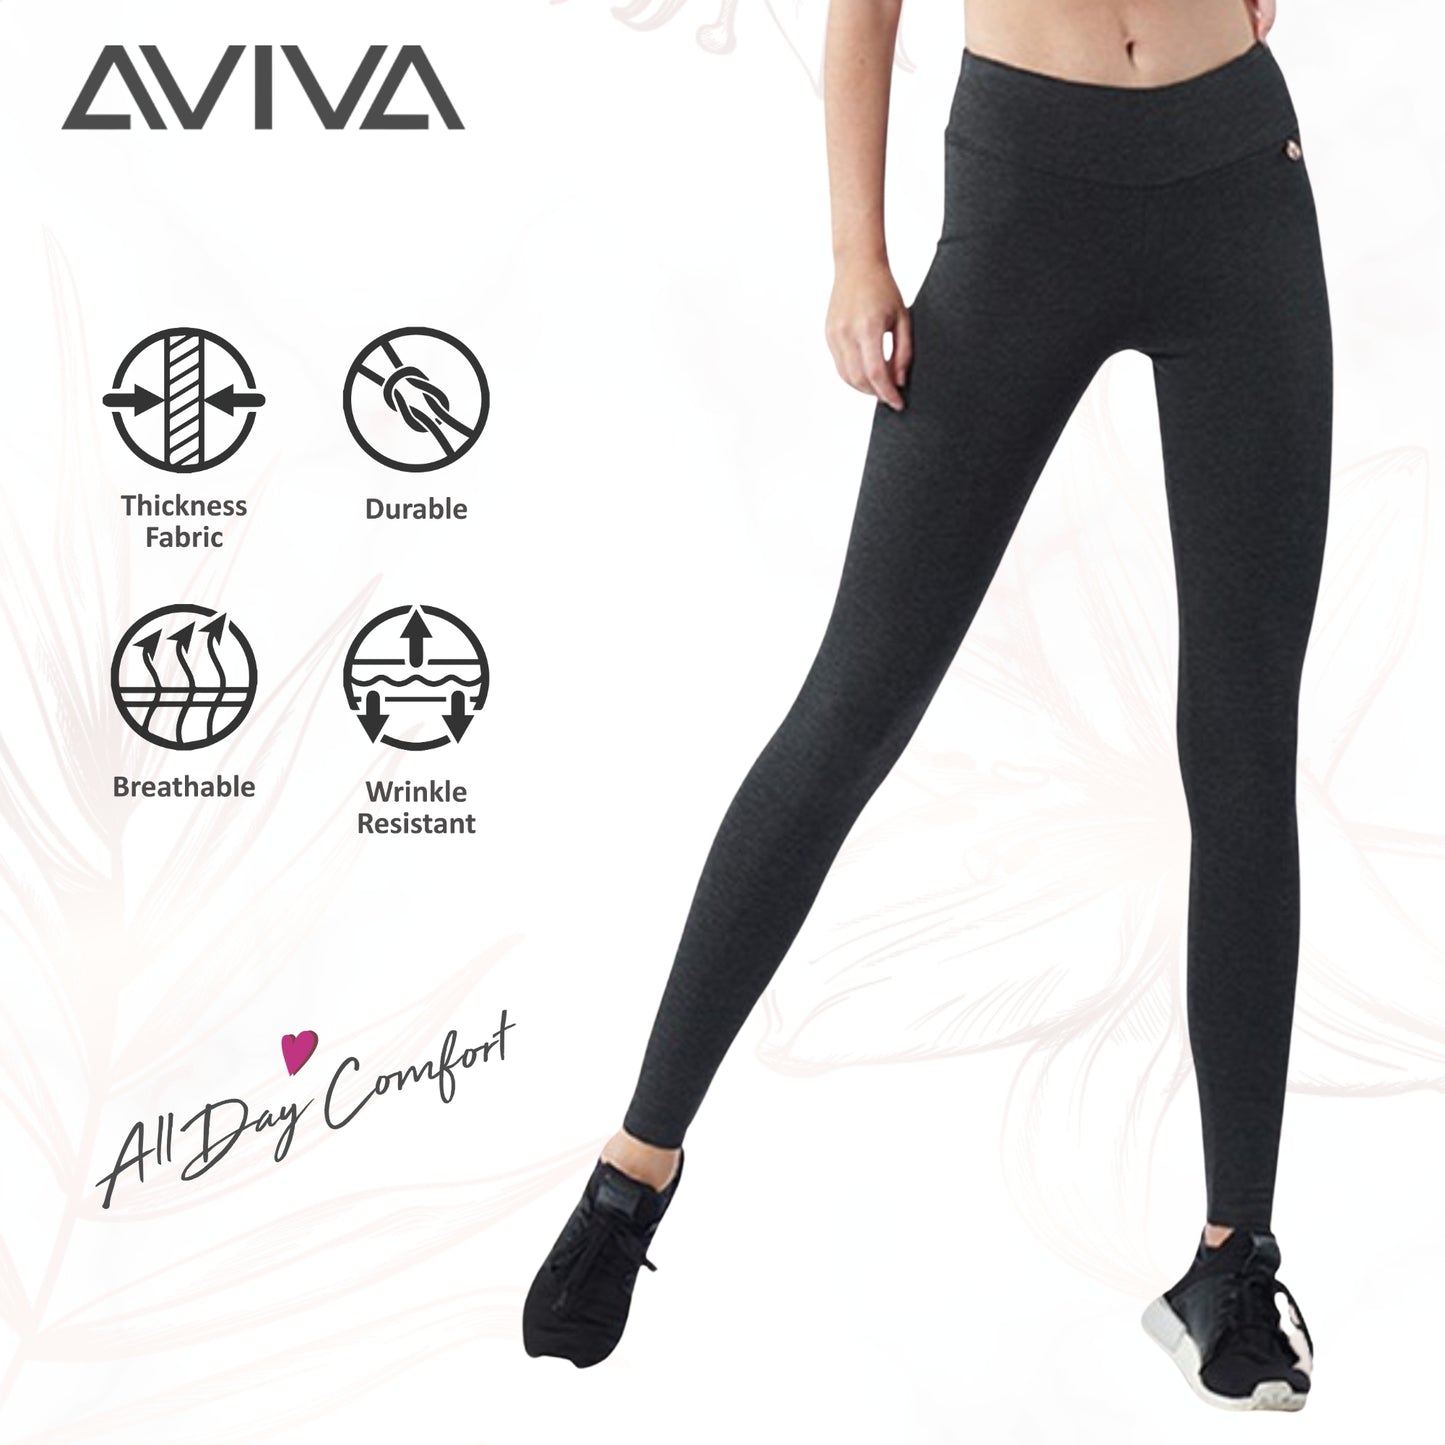 AVIVA New Ava Full Length Tight (86-4042)